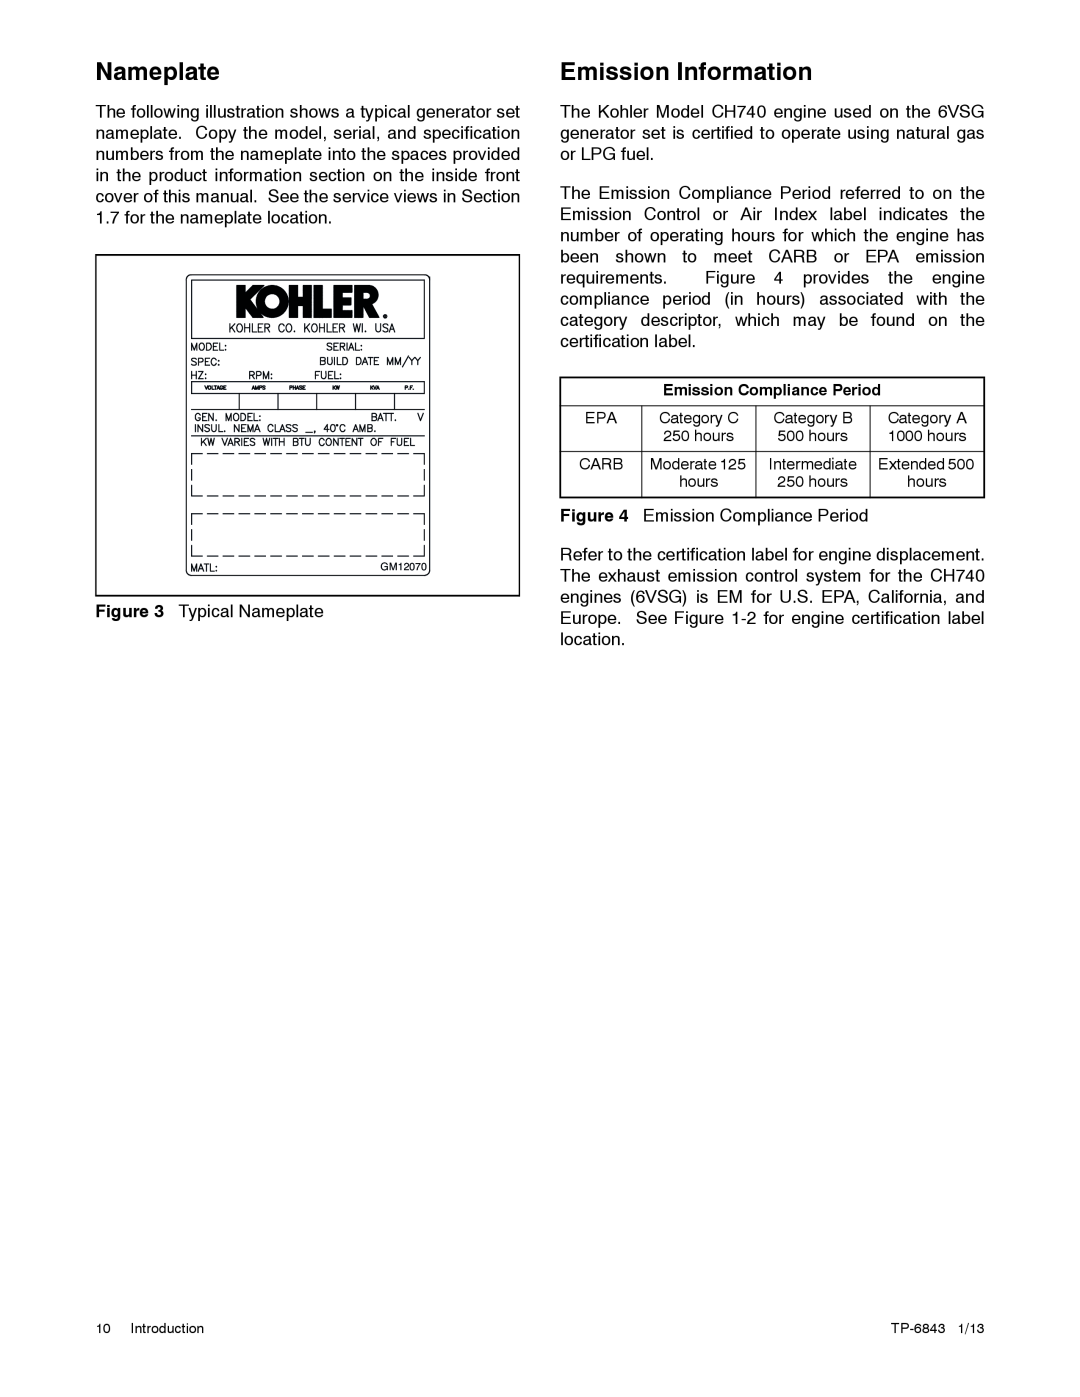 Kohler 36VDC, 6VSG, 24VDC, 48VDC manual Nameplate, Emission Information 